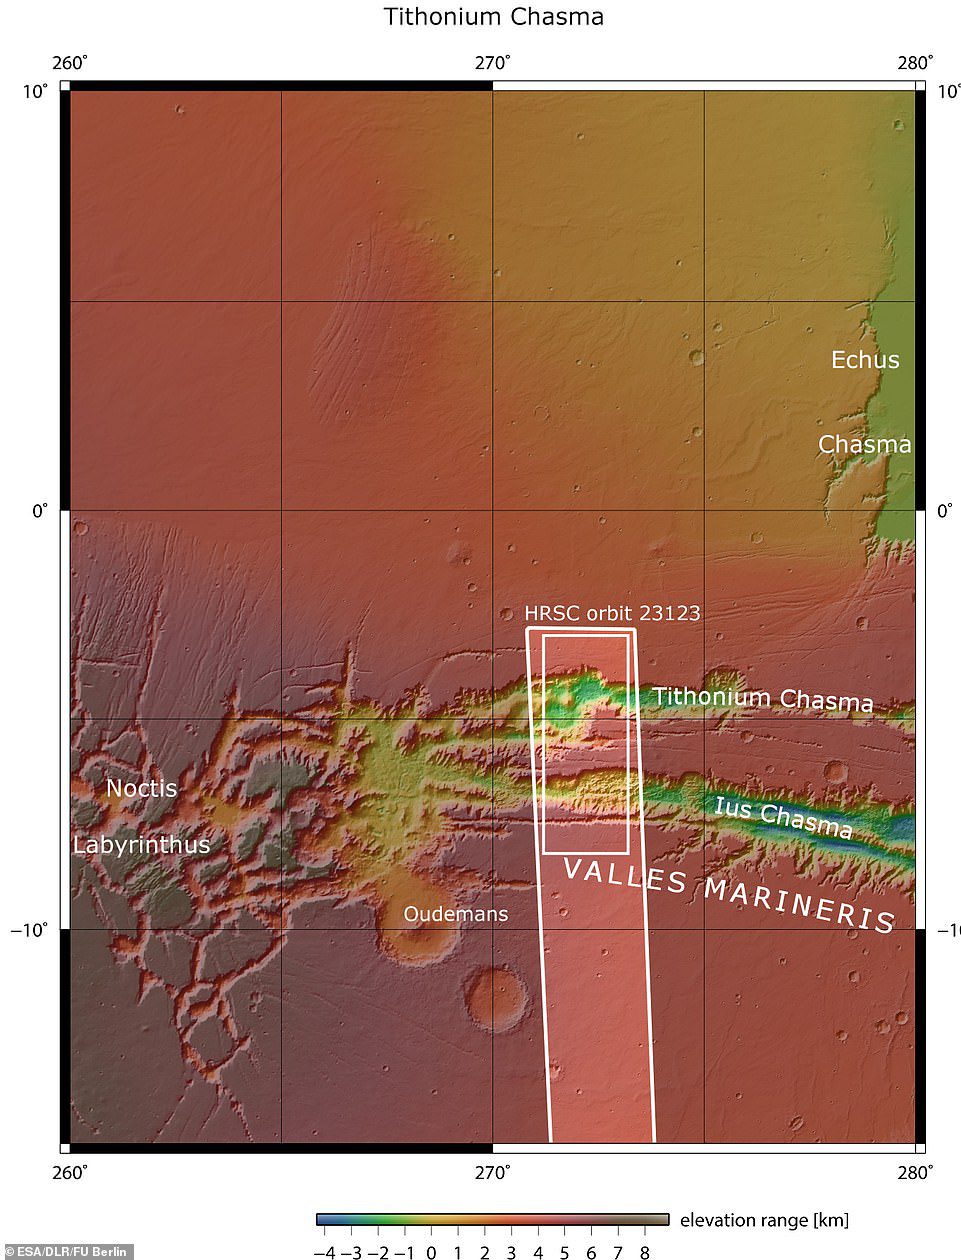 شوهدت Lus و Tithonium Chasmata أعلاه.  تشير المنطقة المحددة بالمربع الأبيض الغامق إلى المنطقة التي تم تصويرها بواسطة كاميرا استريو Mars Express High Resolution في 21 أبريل 2022 أثناء المدار